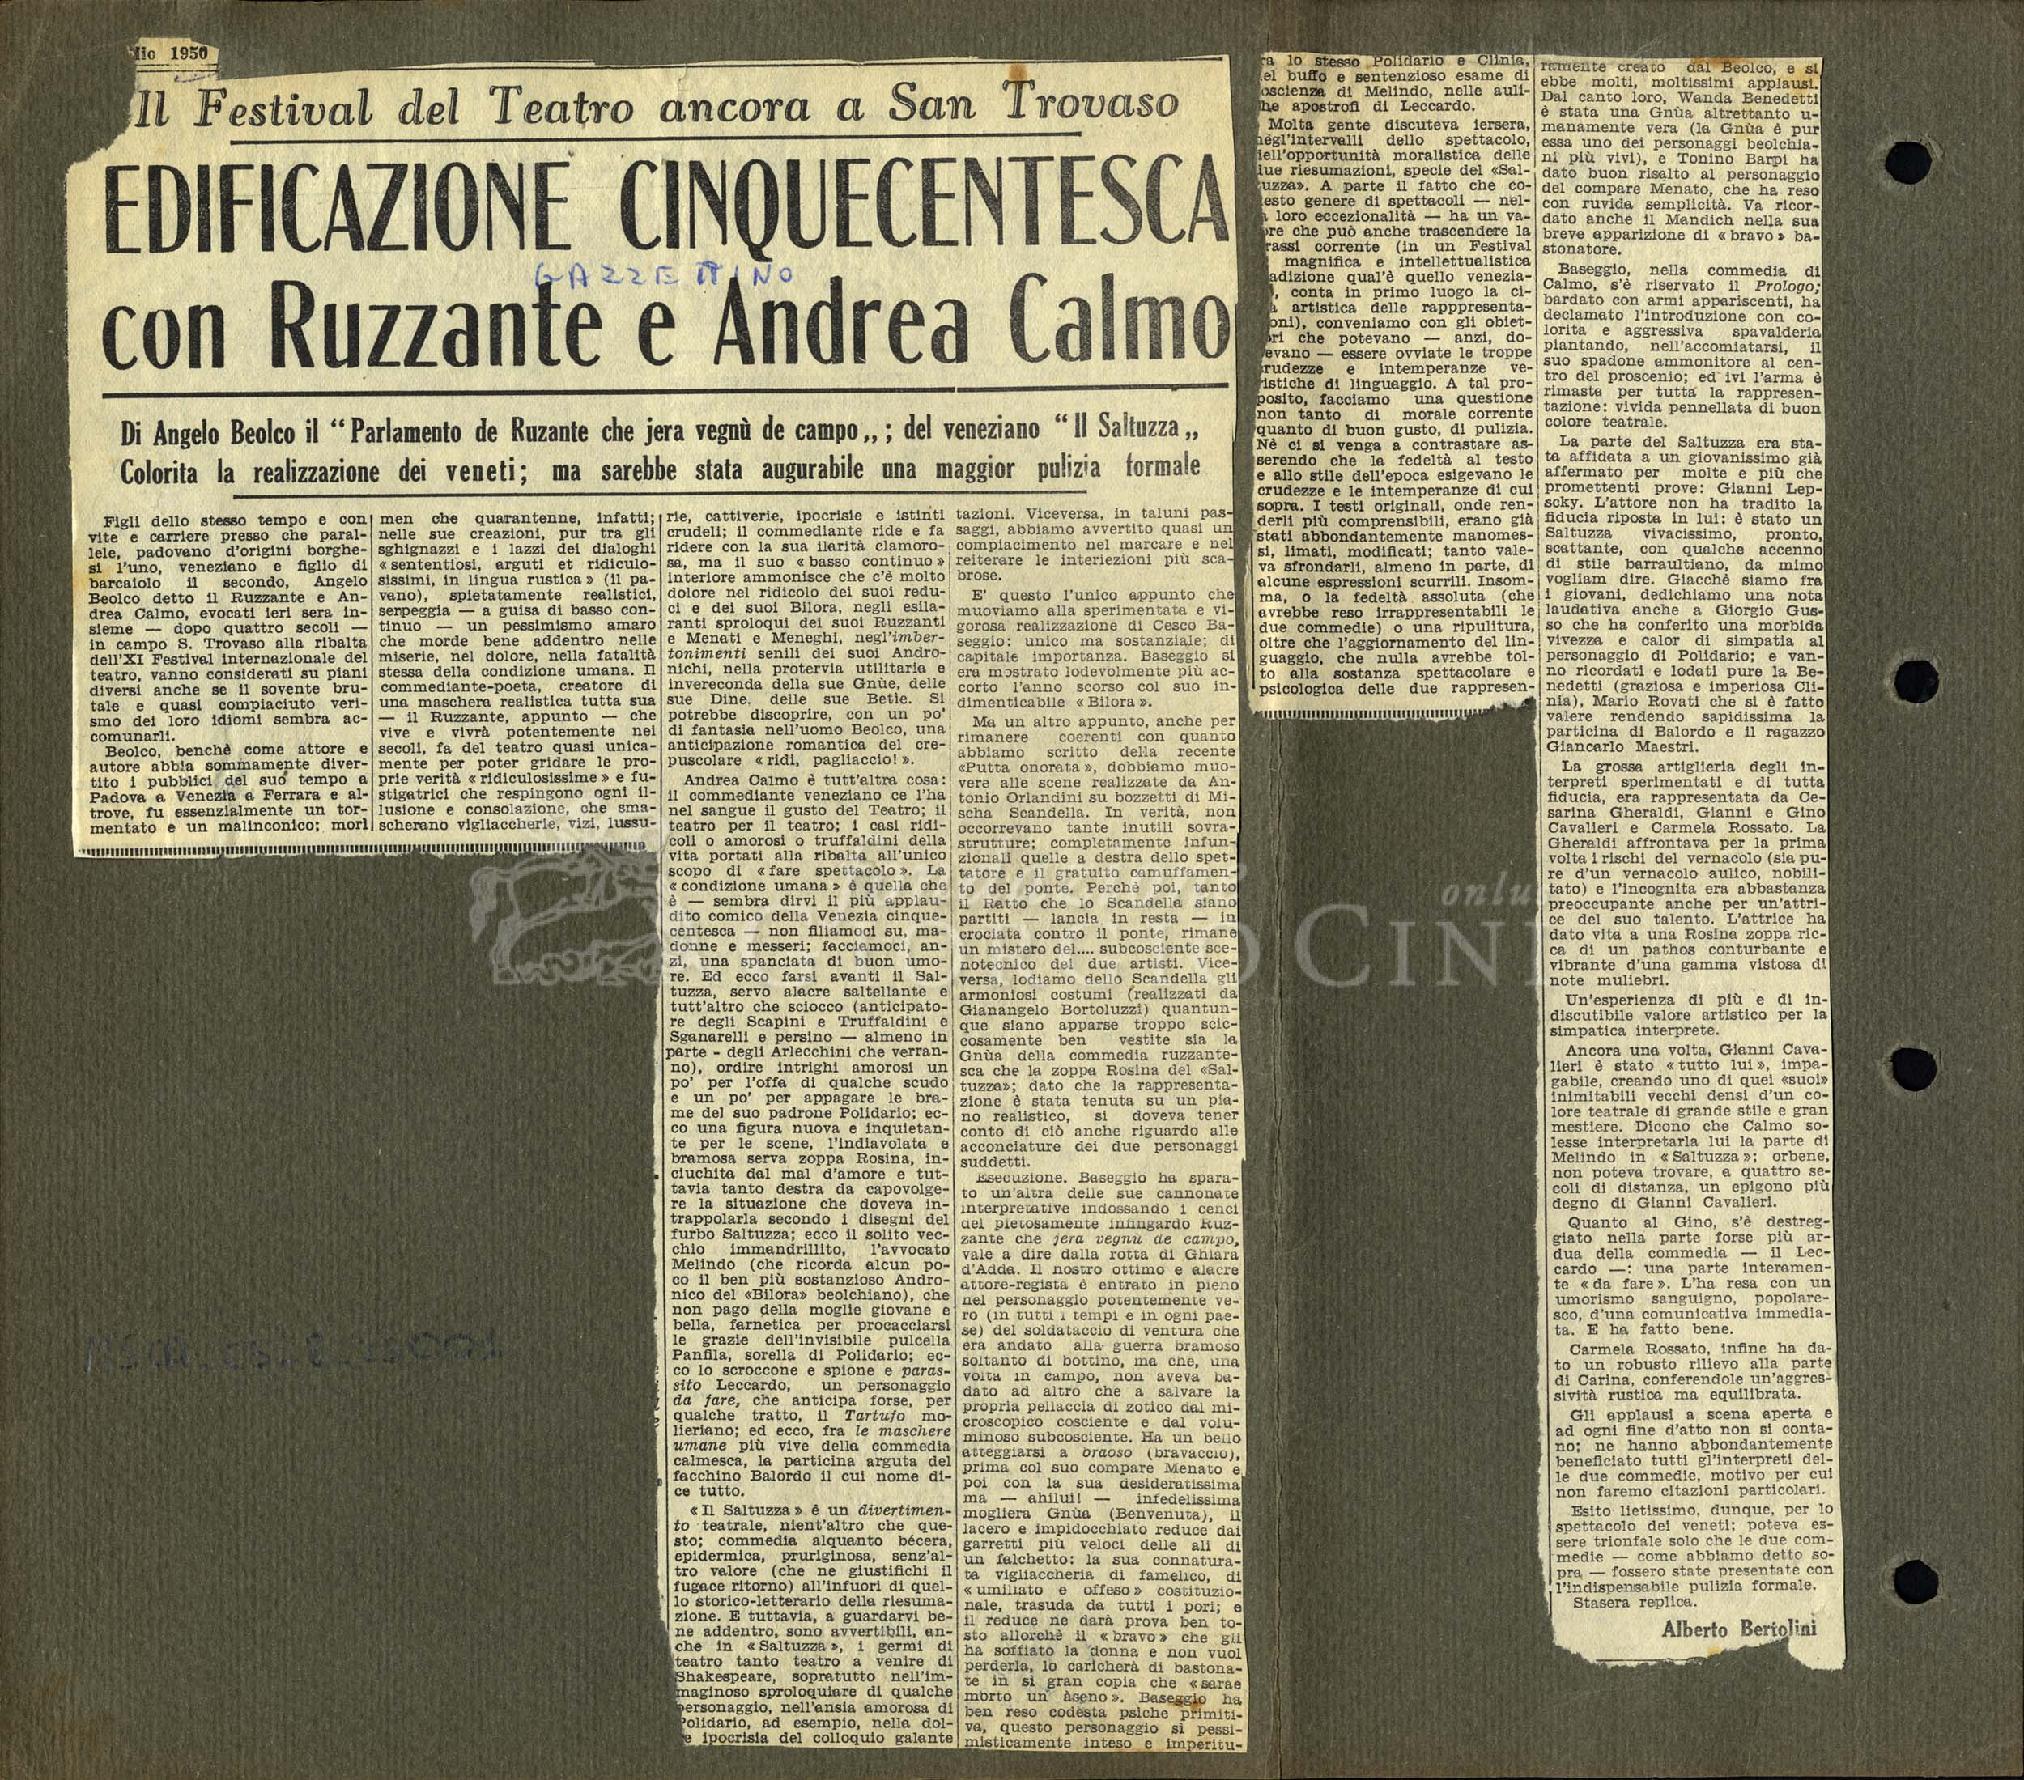 Edificazione cinquecentesca con Ruzzante e Andrea Calmo
				 : Il Festival del Teatro ancora a San Trovaso 1950